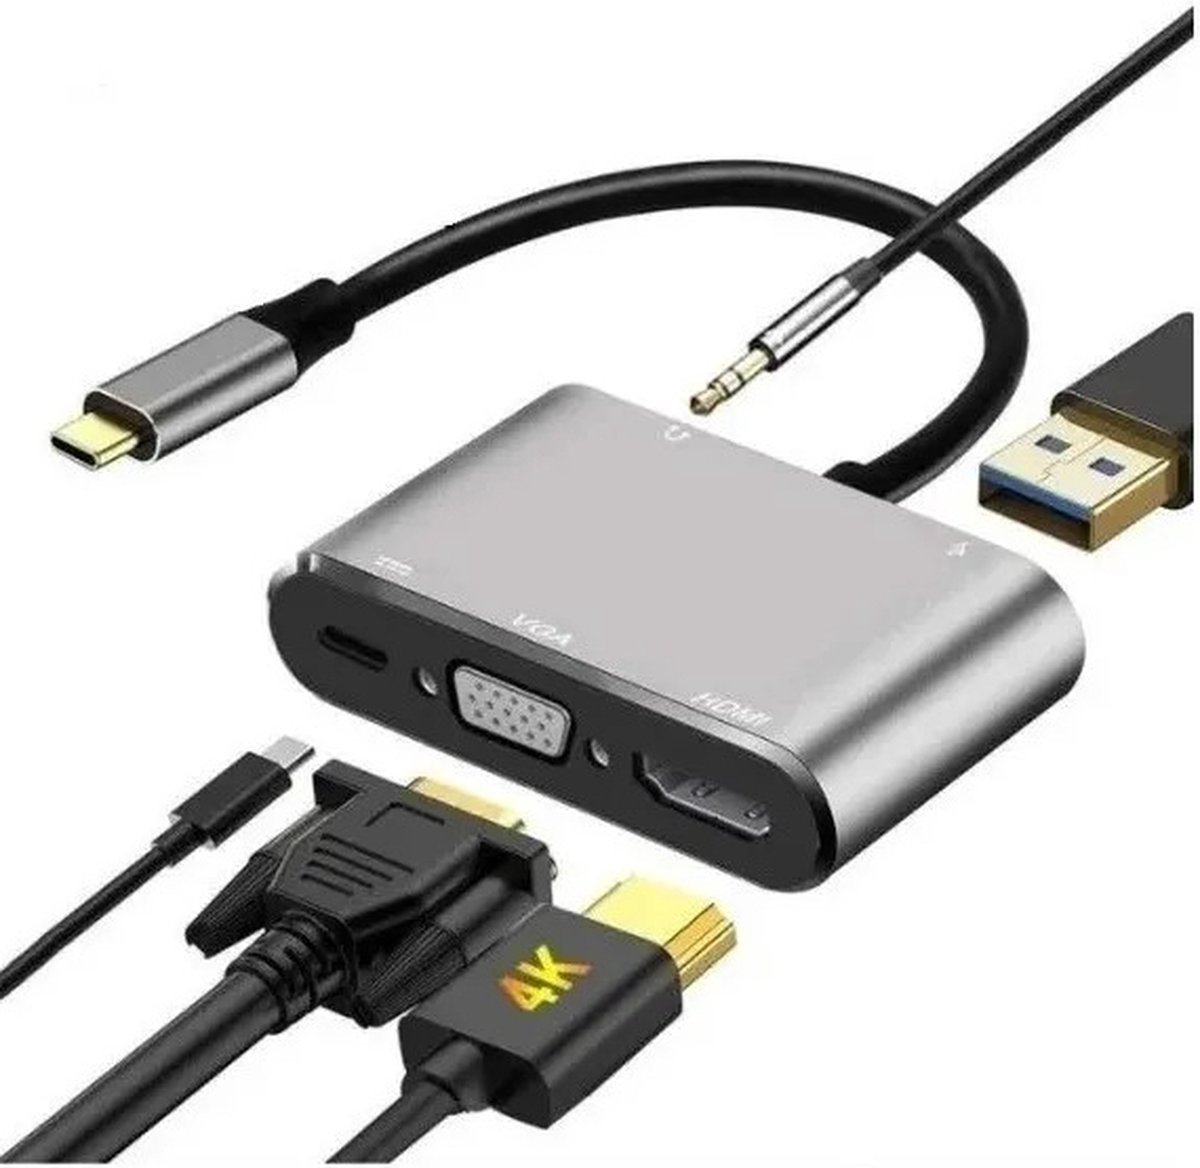 Adaptador USB Type C 5 in 1 A HDMI 4k, Vga, Usb 3.0, Usb C